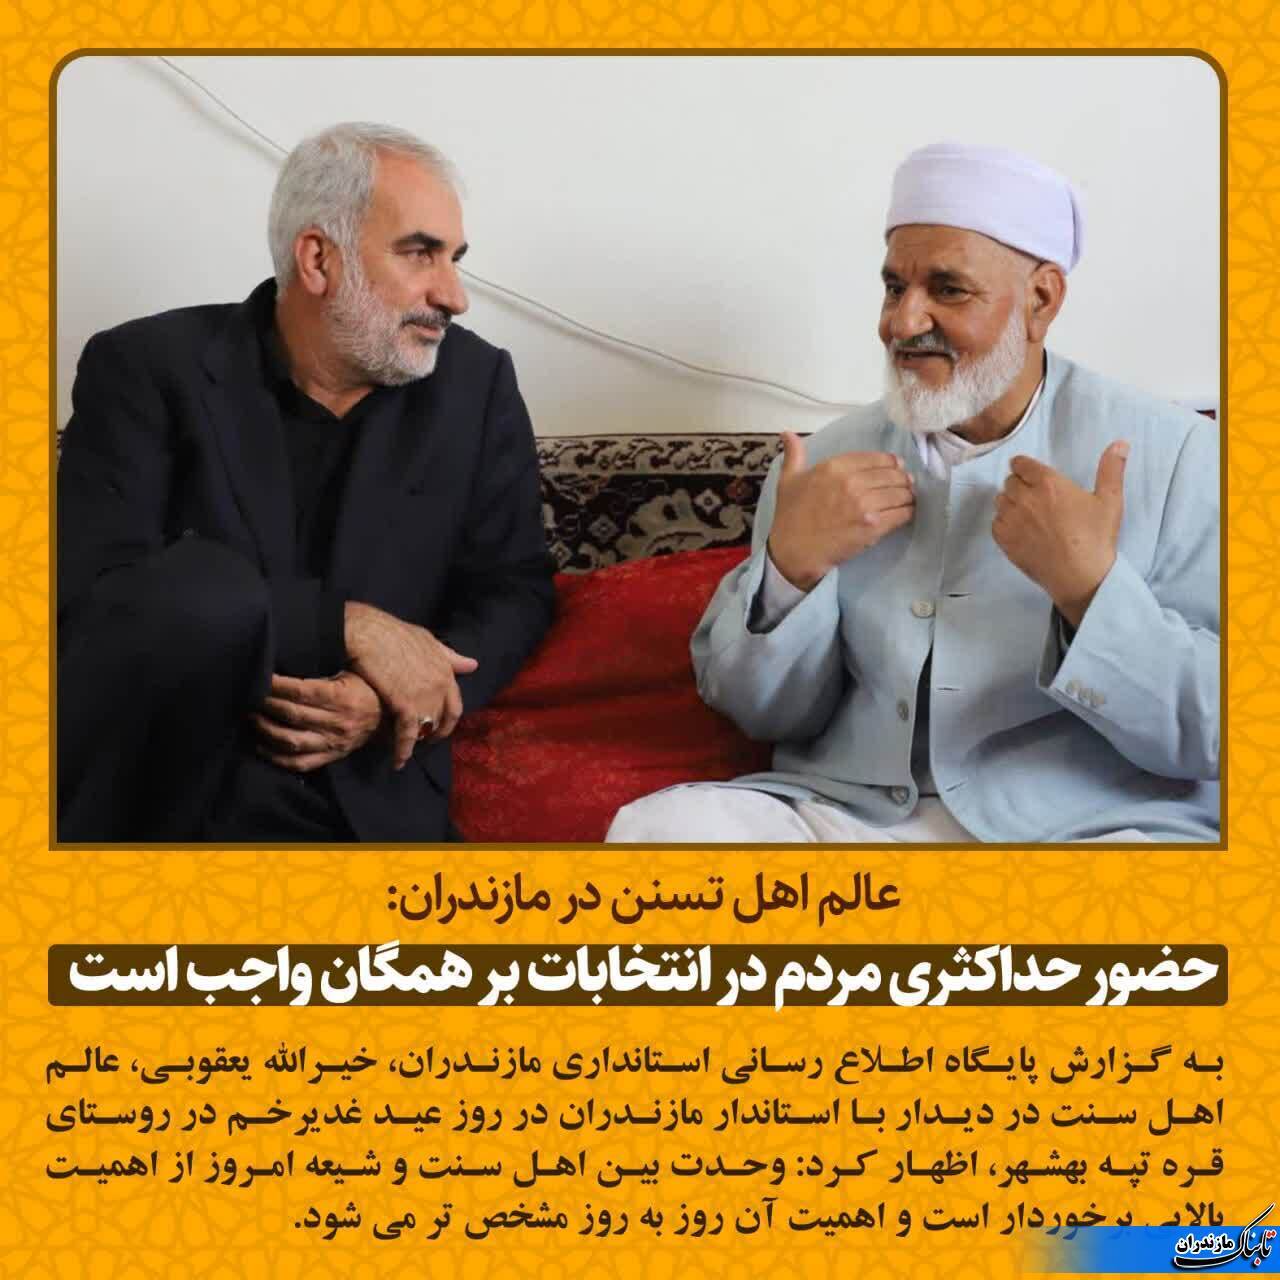 دعوت روحانی اهل سنت از مردم برای شرکت در انتخابات ریاست جمهوری